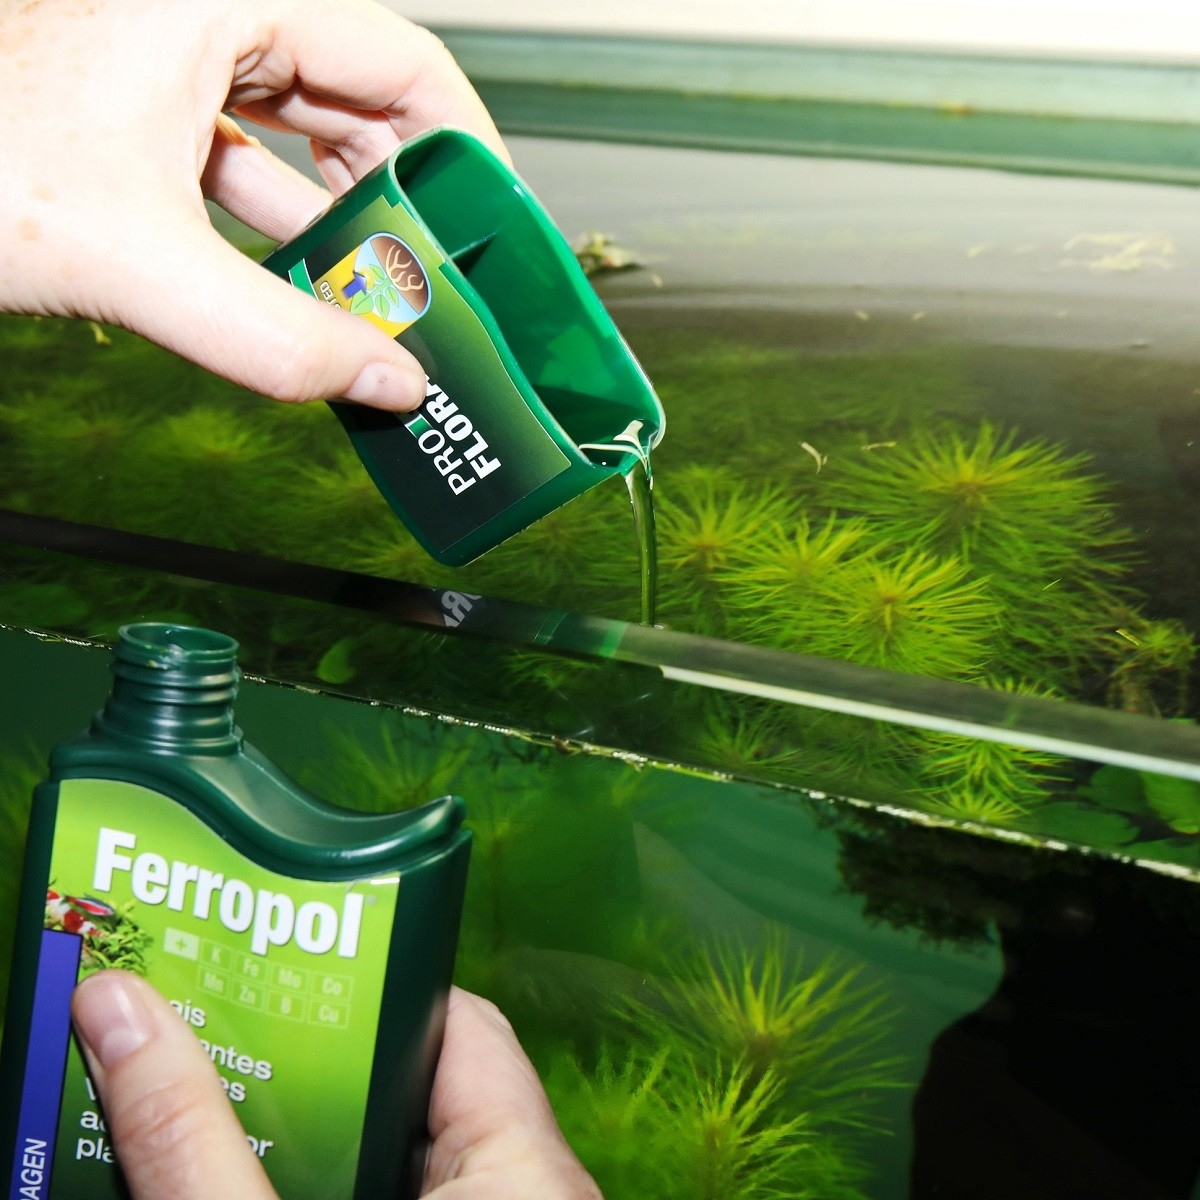 JBL Ferropol Engrais liquide pour plantes d'aquarium avec oligo